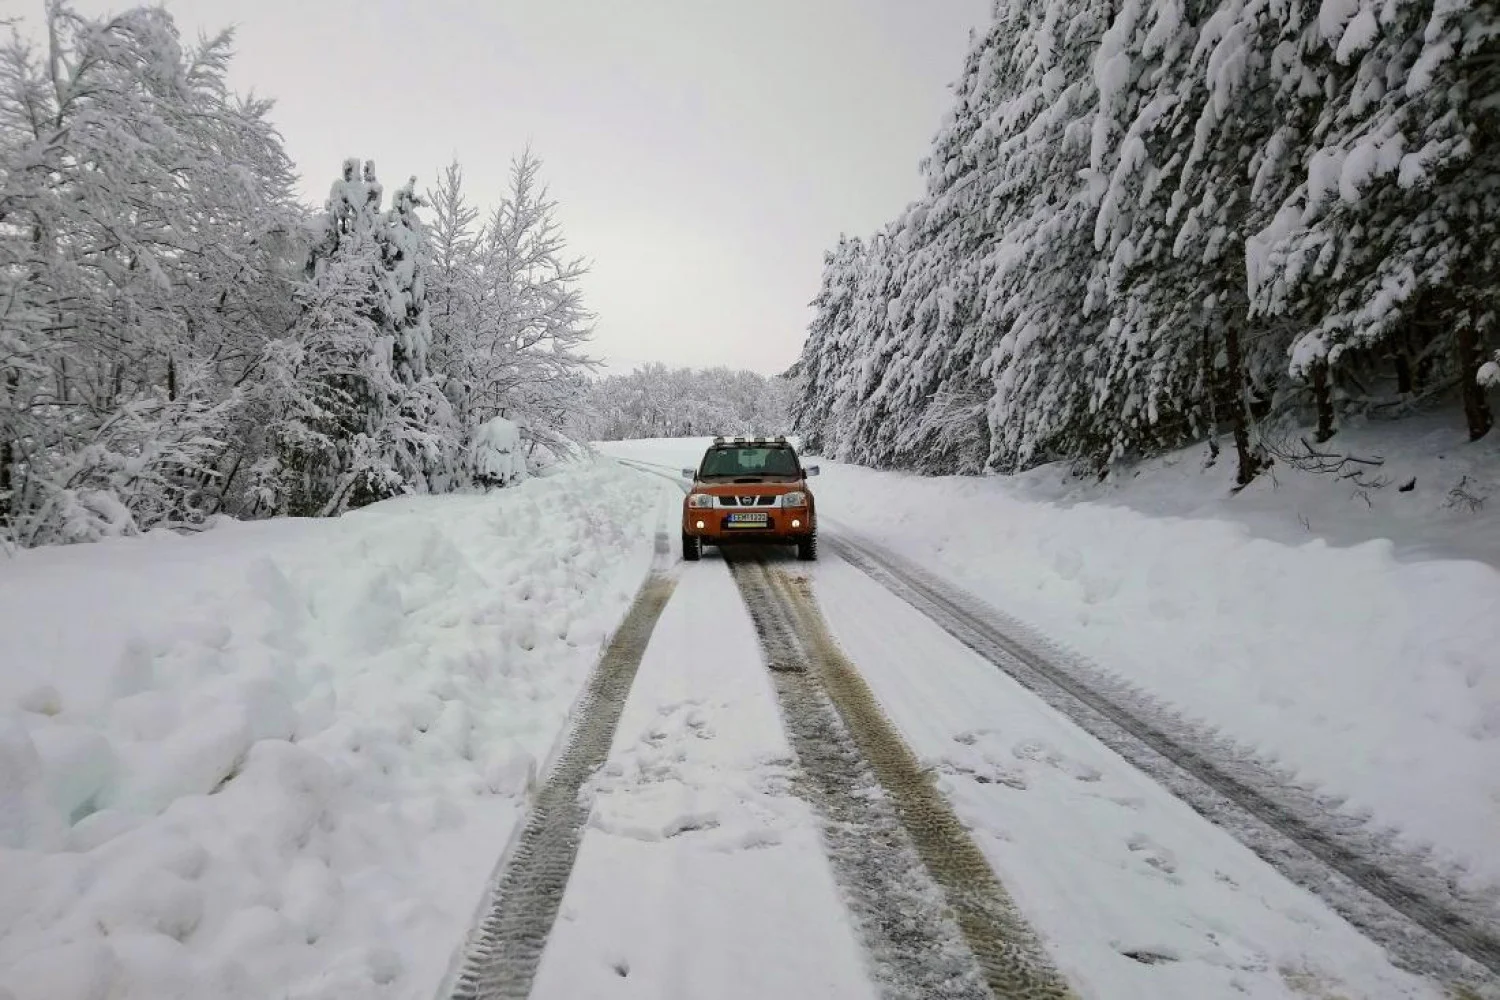 Κακοκαιρία Κάρμελ: Χιόνια σε πολλές περιοχές της χώρας - Πώς θα εξελιχθεί κατά τη διάρκεια της μέρας